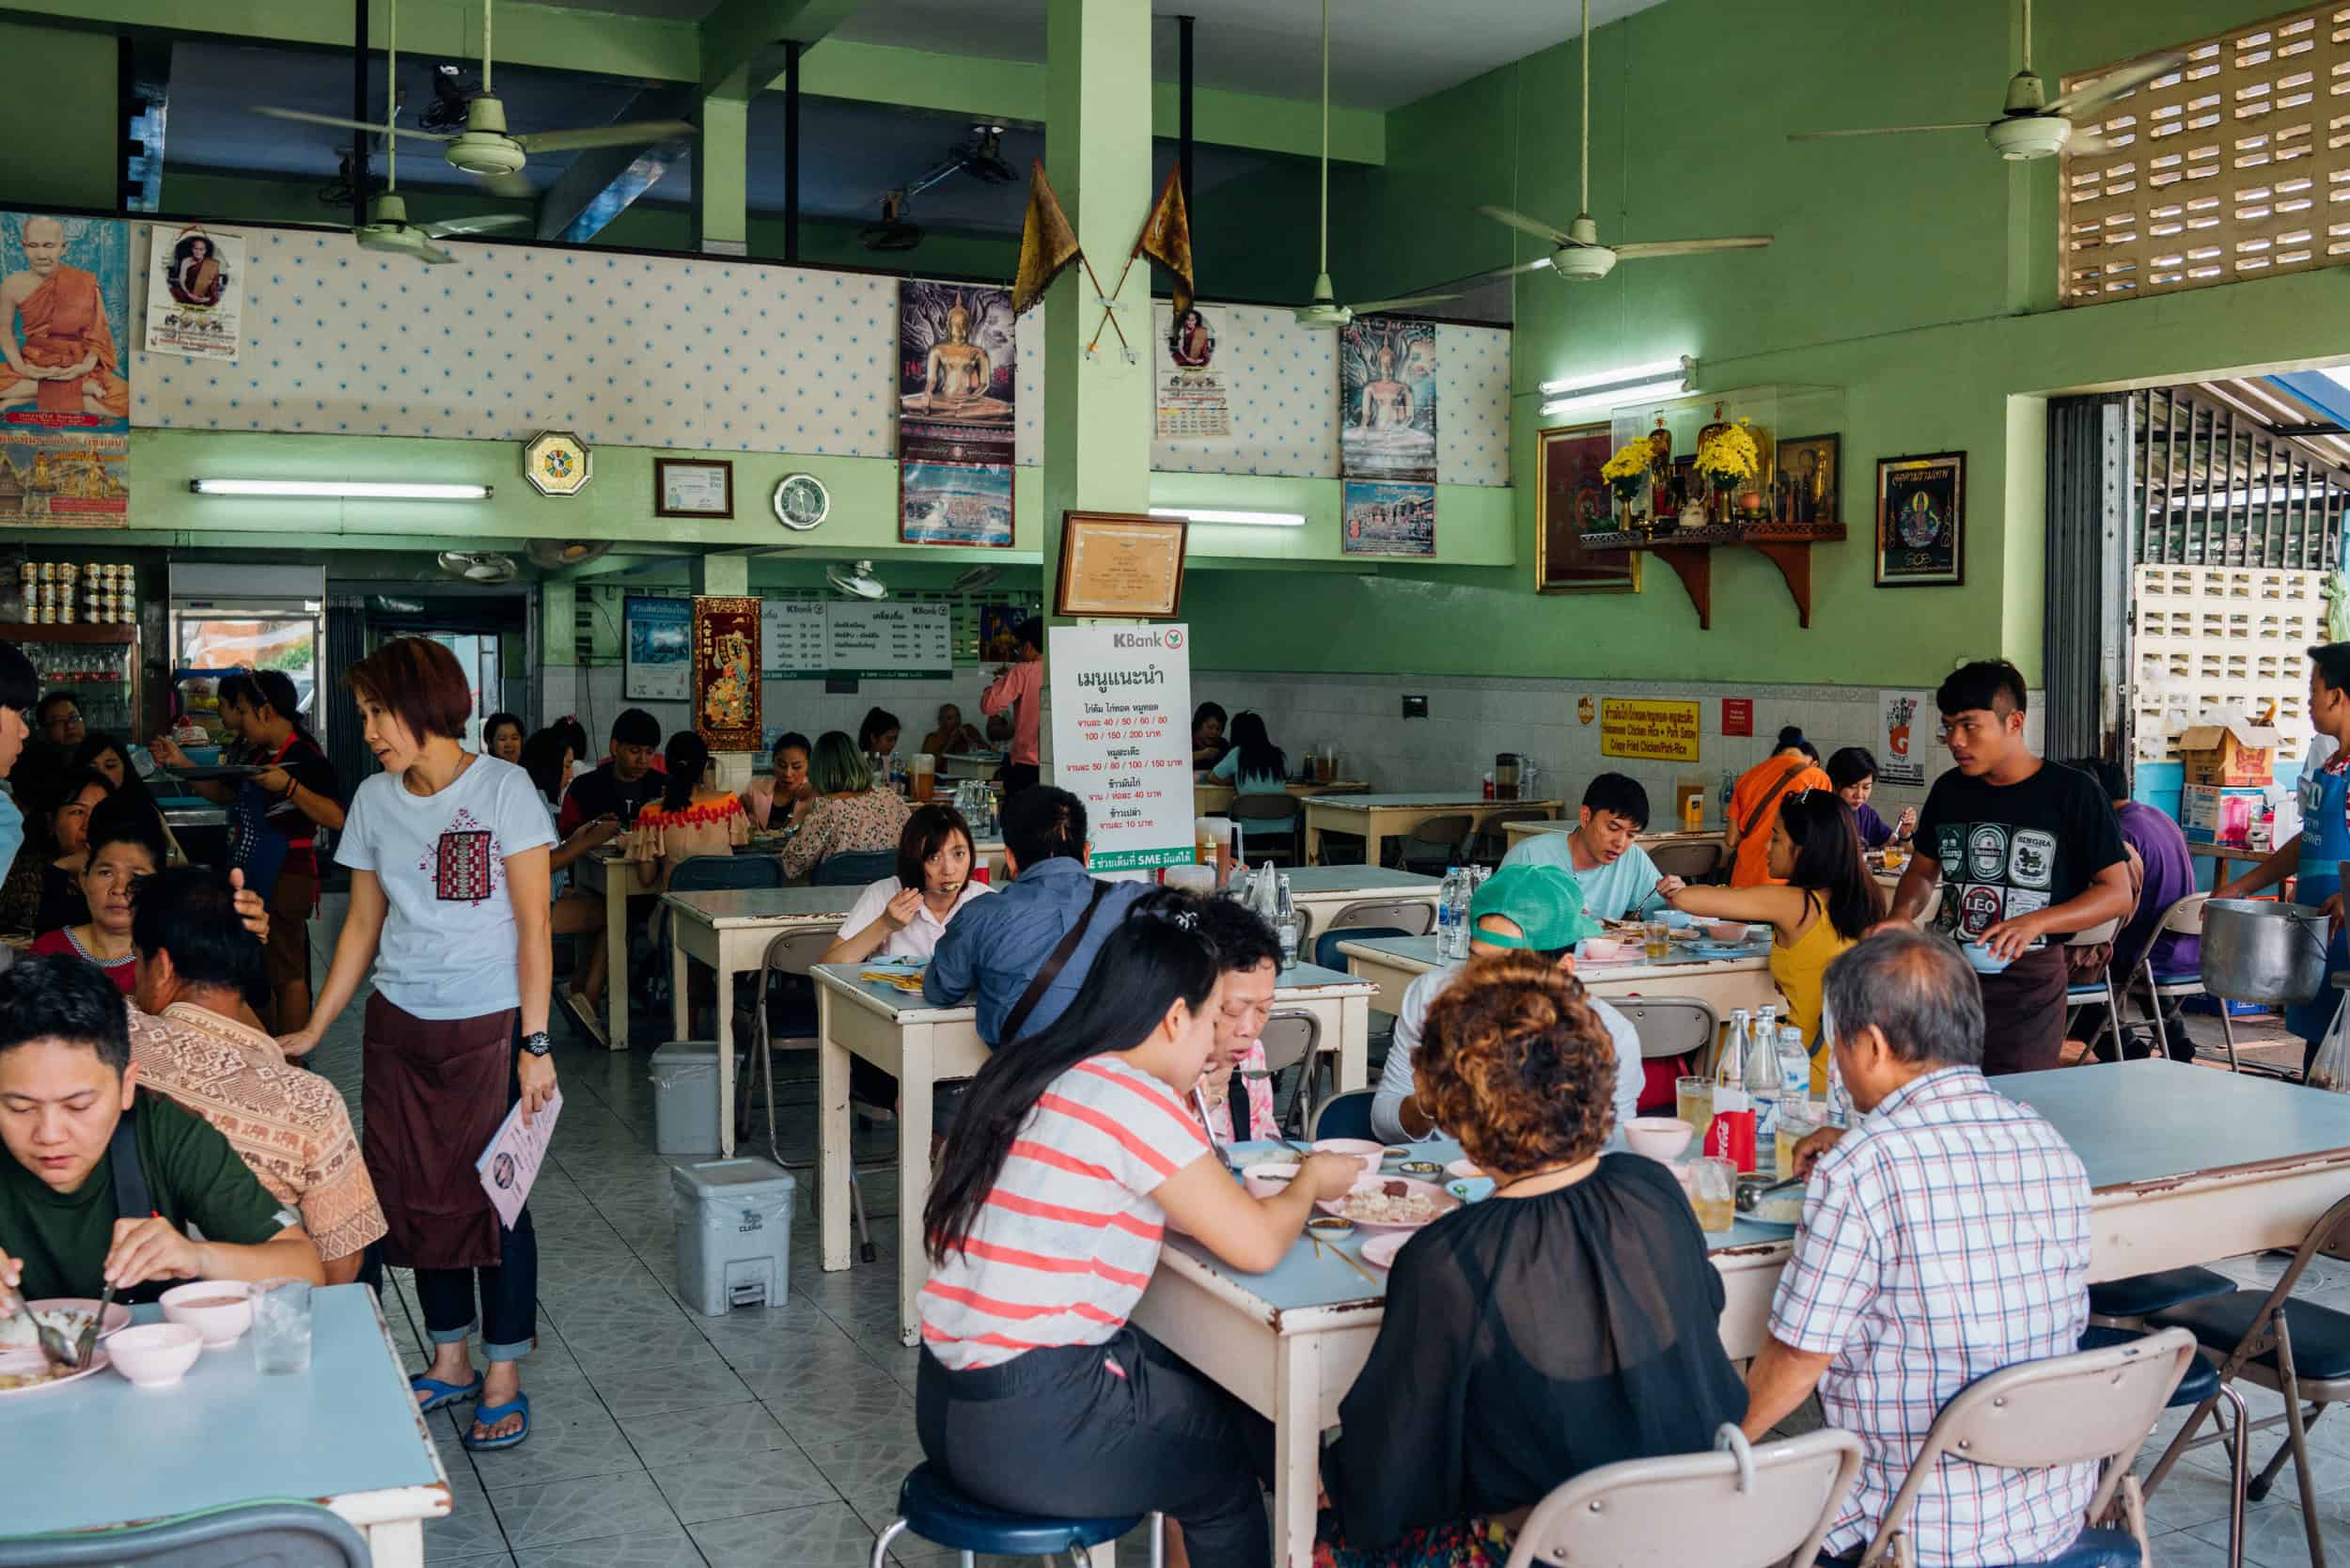 Với kinh nghiệm du lịch của Combo Nghỉ Dưỡng, hãy cùng điểm qua các địa điểm ăn uống, vui chơi giải trí nổi tiếng, hấp dẫn ở Chiang Mai có gì